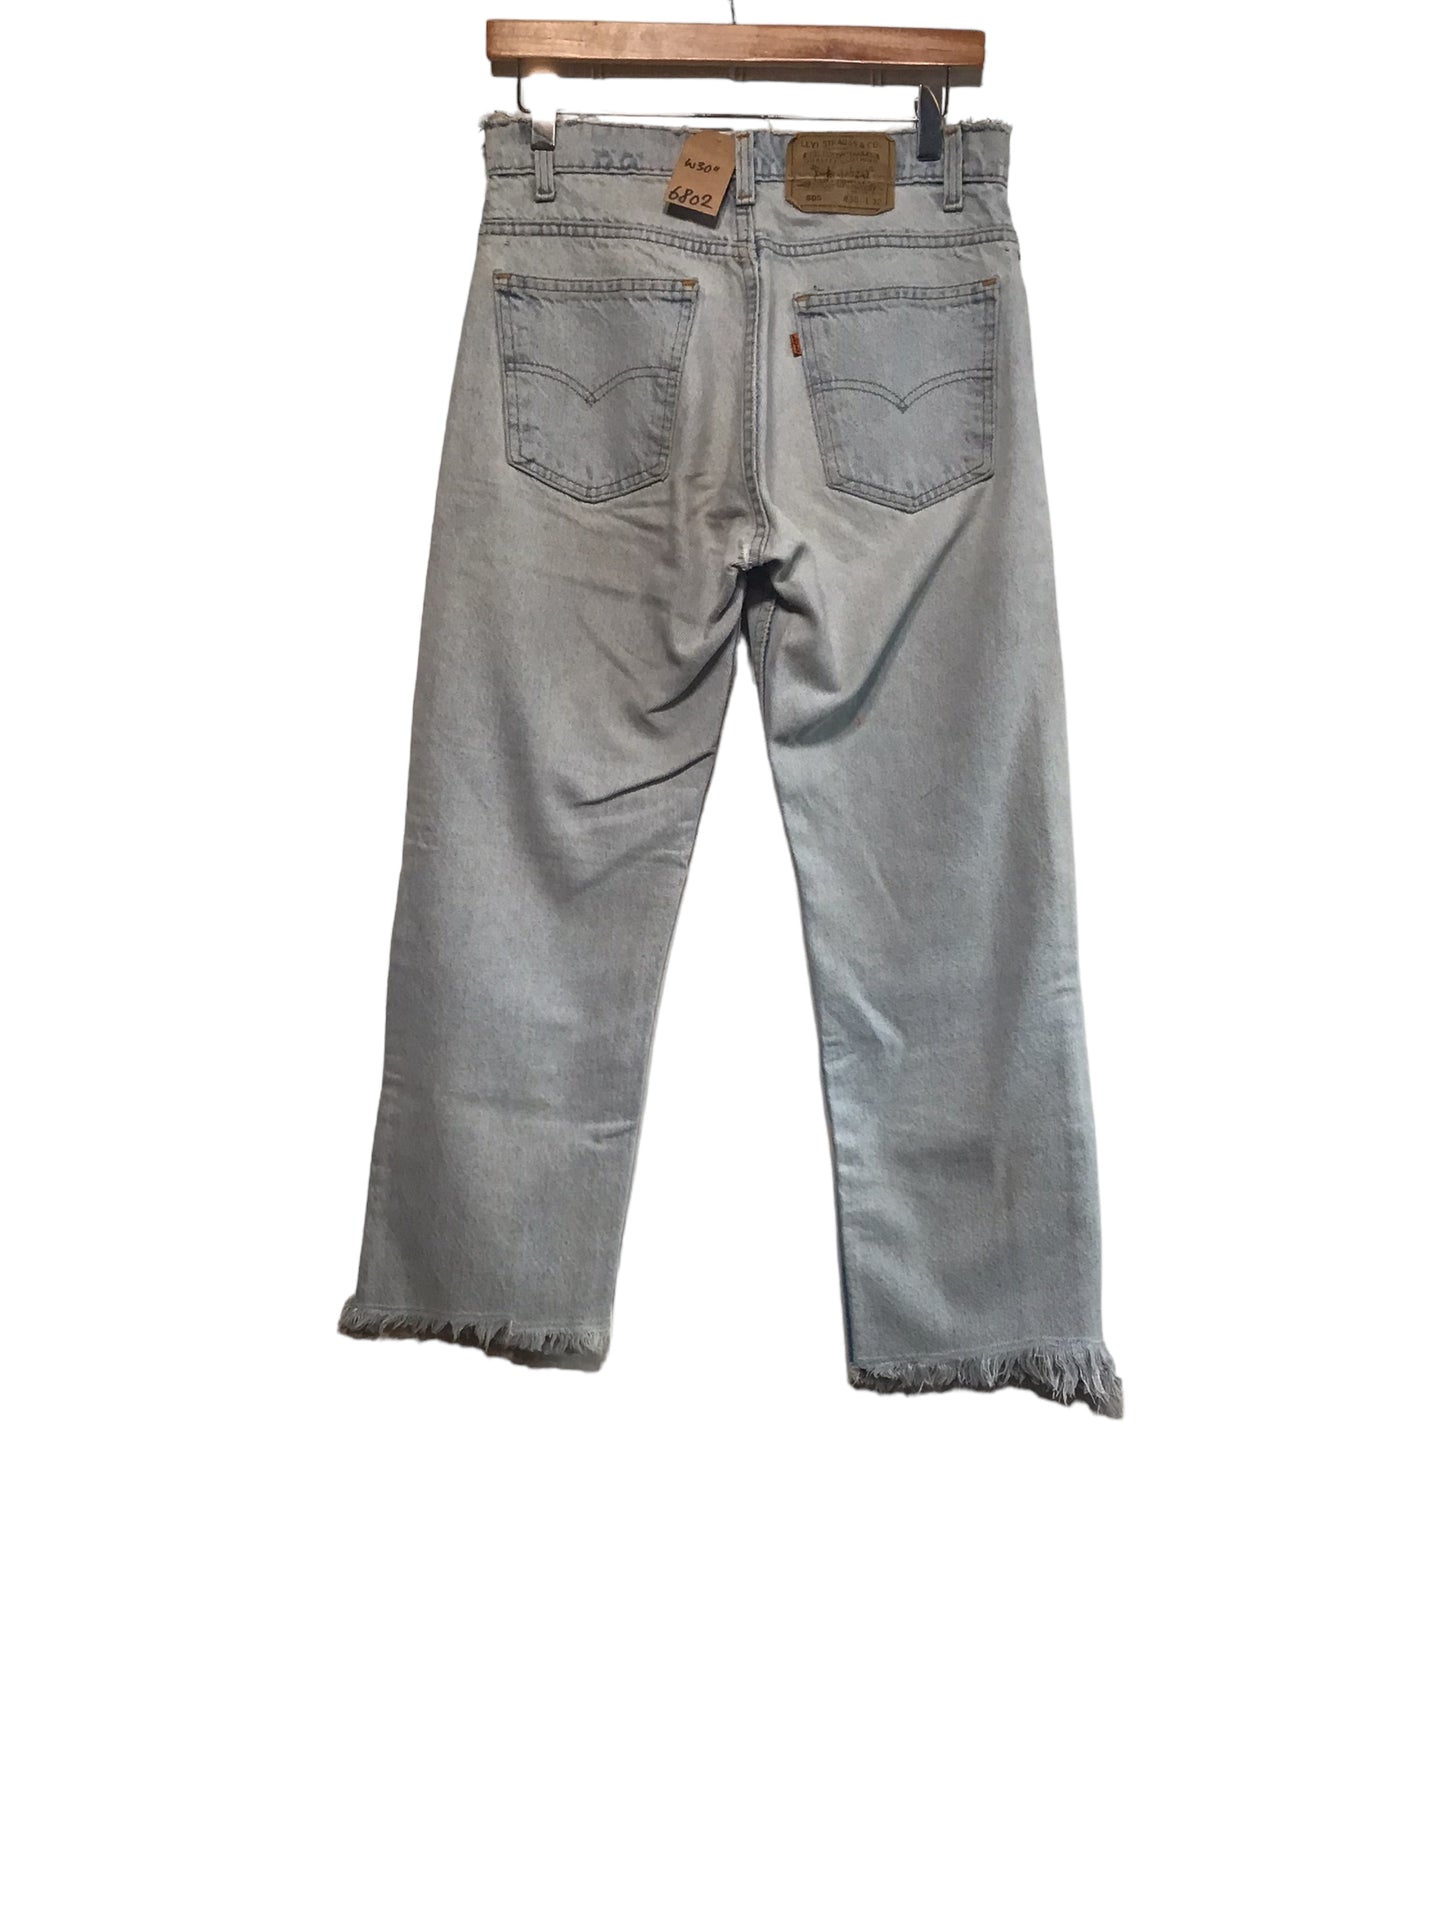 Levi 505 Jeans (30x32)